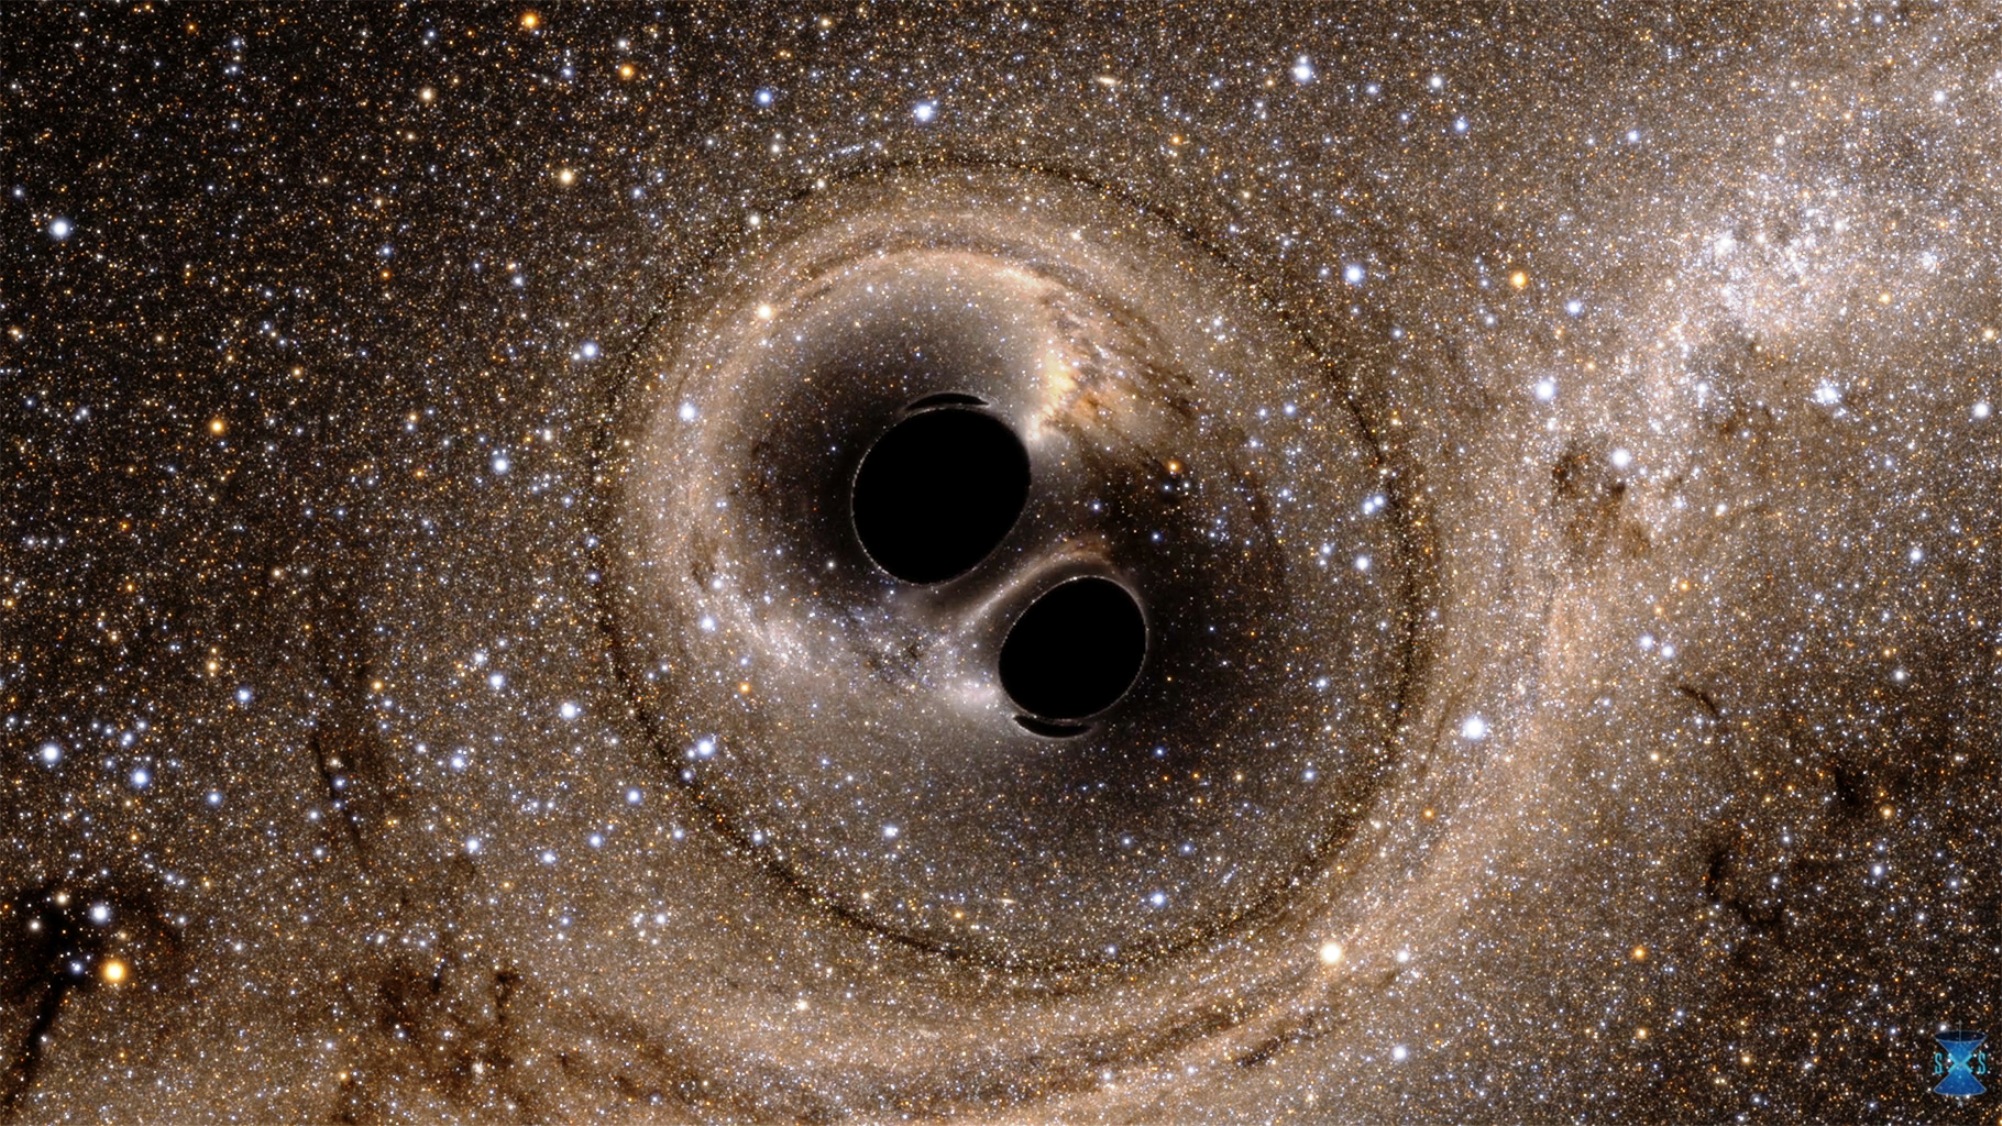 Ligo (Laser Interferometer Gravitational-Wave Observatory) a permis de détecter l'onde gravitationnelle produite par la collision puis la fusion de deux trous noirs d'environ 30 masses solaires chacun. À quoi aurait ressemblé visuellement l'évènement pour des observateurs installés à quelques milliers de kilomètres ? Des simulations numériques permettent de le découvrir ;&nbsp;cette image, qui illustre des effets de lentille gravitationnelle, est extraite de l'une d'elles. © SXS (Simulating eXtreme Spacetimes project) 